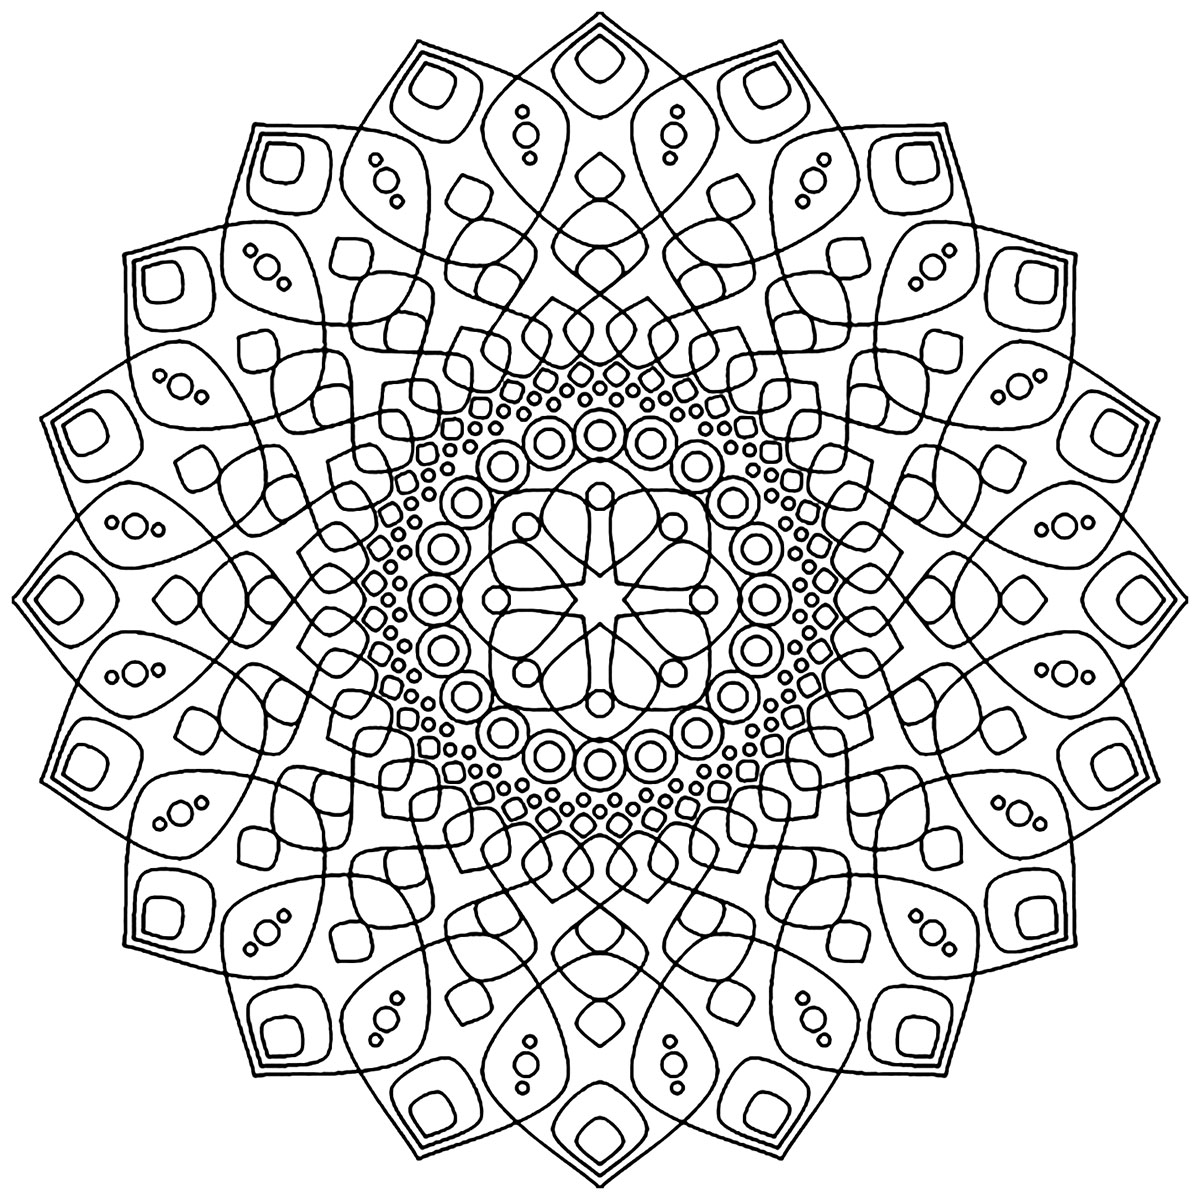 Se está pronto para passar alguns minutos de relaxamento, prepare-se para colorir esta Mandala complexa e realmente hipnótica ...